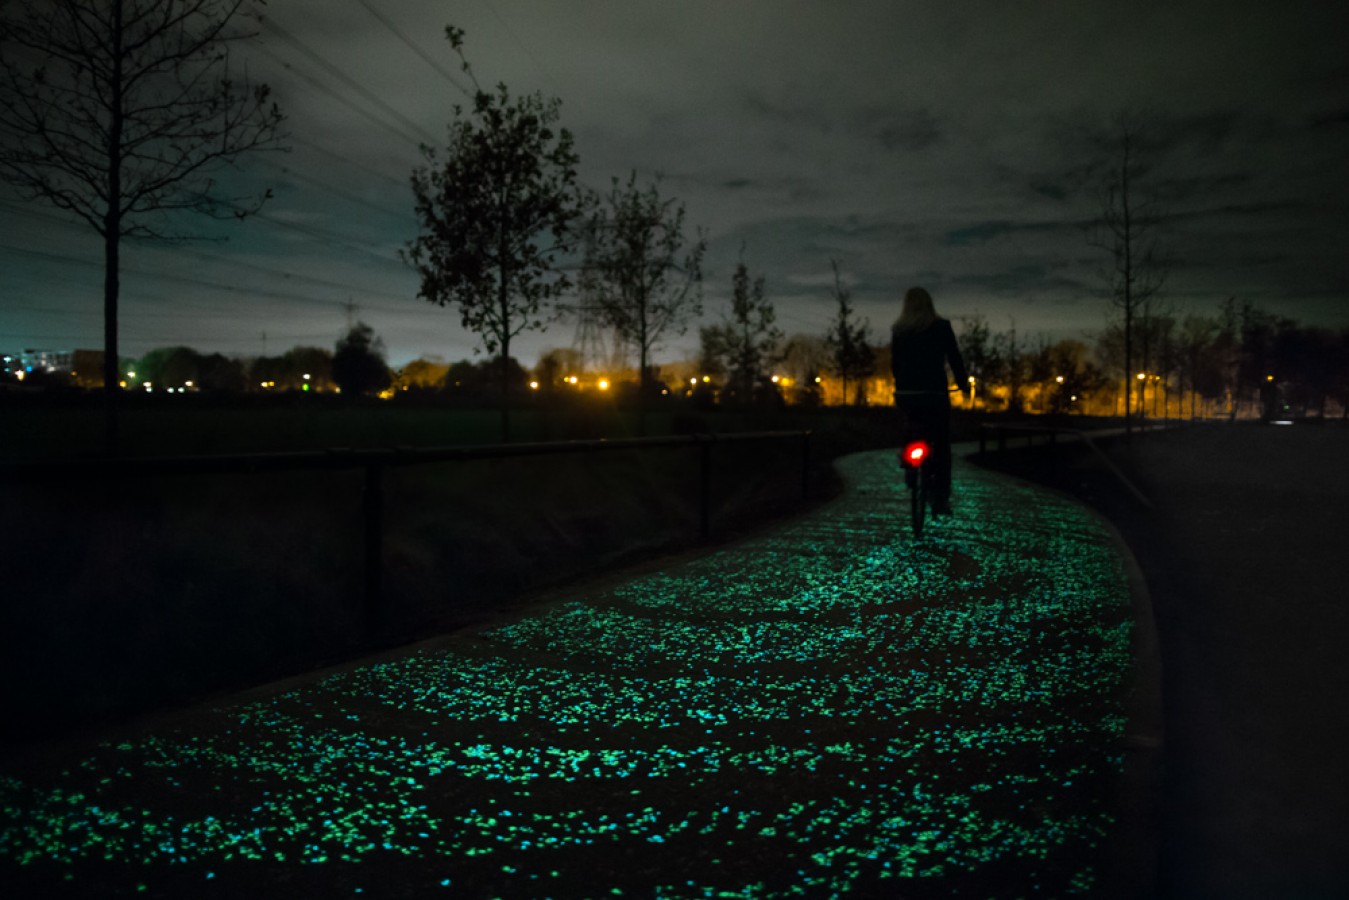 Van Gogh’un Yıldızlı Gece adlı tablosundan esinlenerek ışıklandırılmış bisiklet yolu